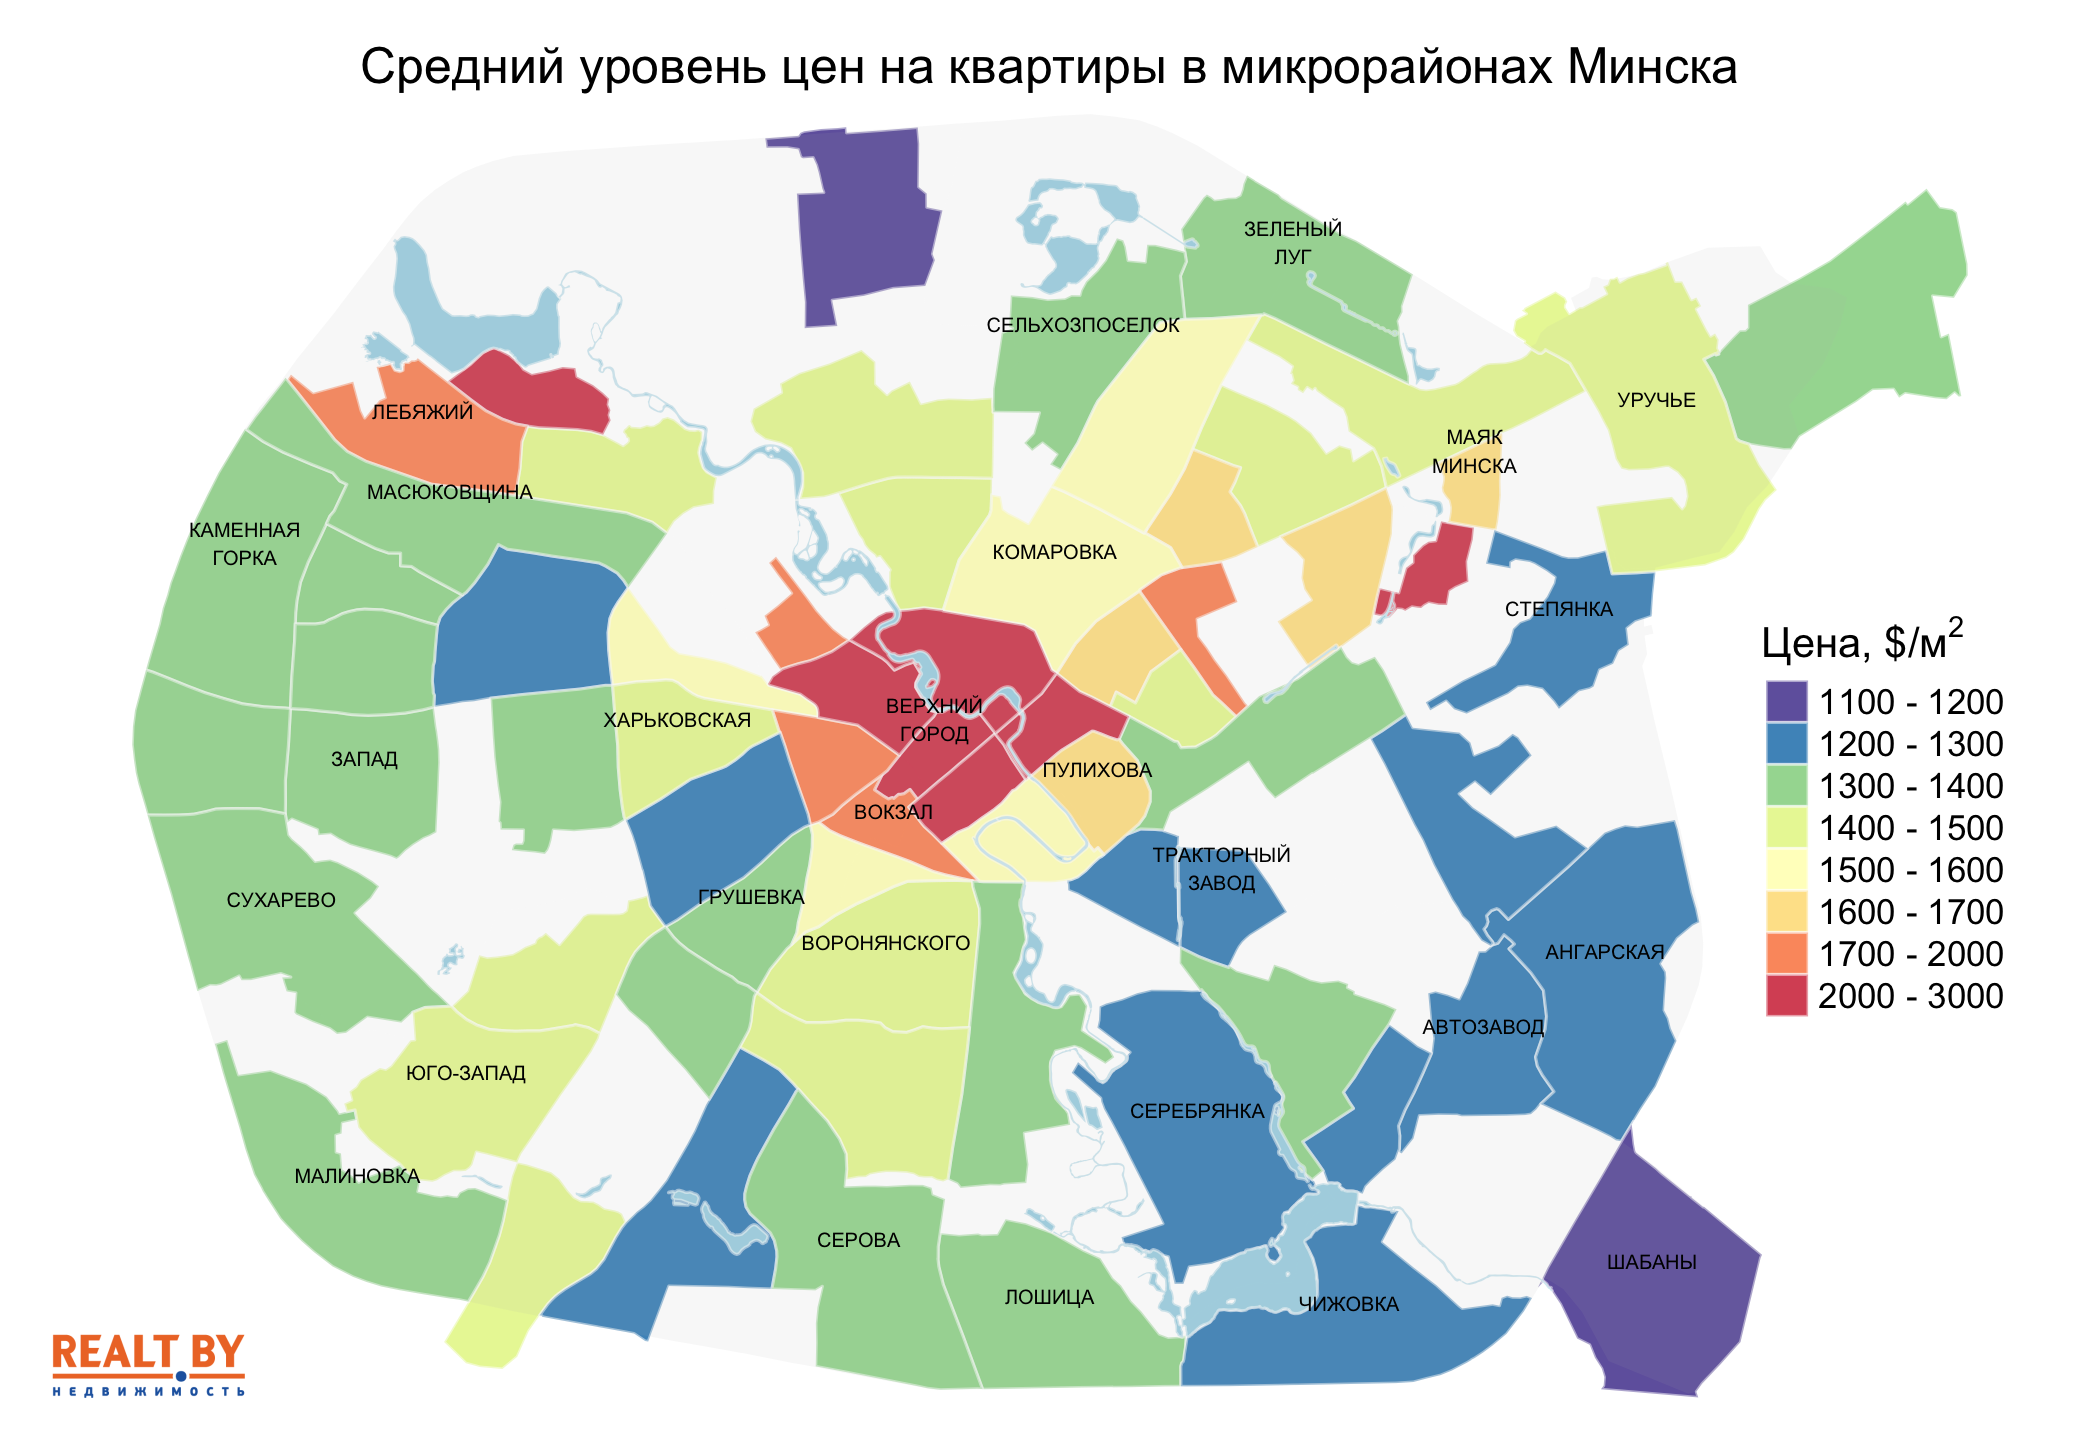 Мониторинг цен предложения квартир в Минске за 22-29 июня 2020 года